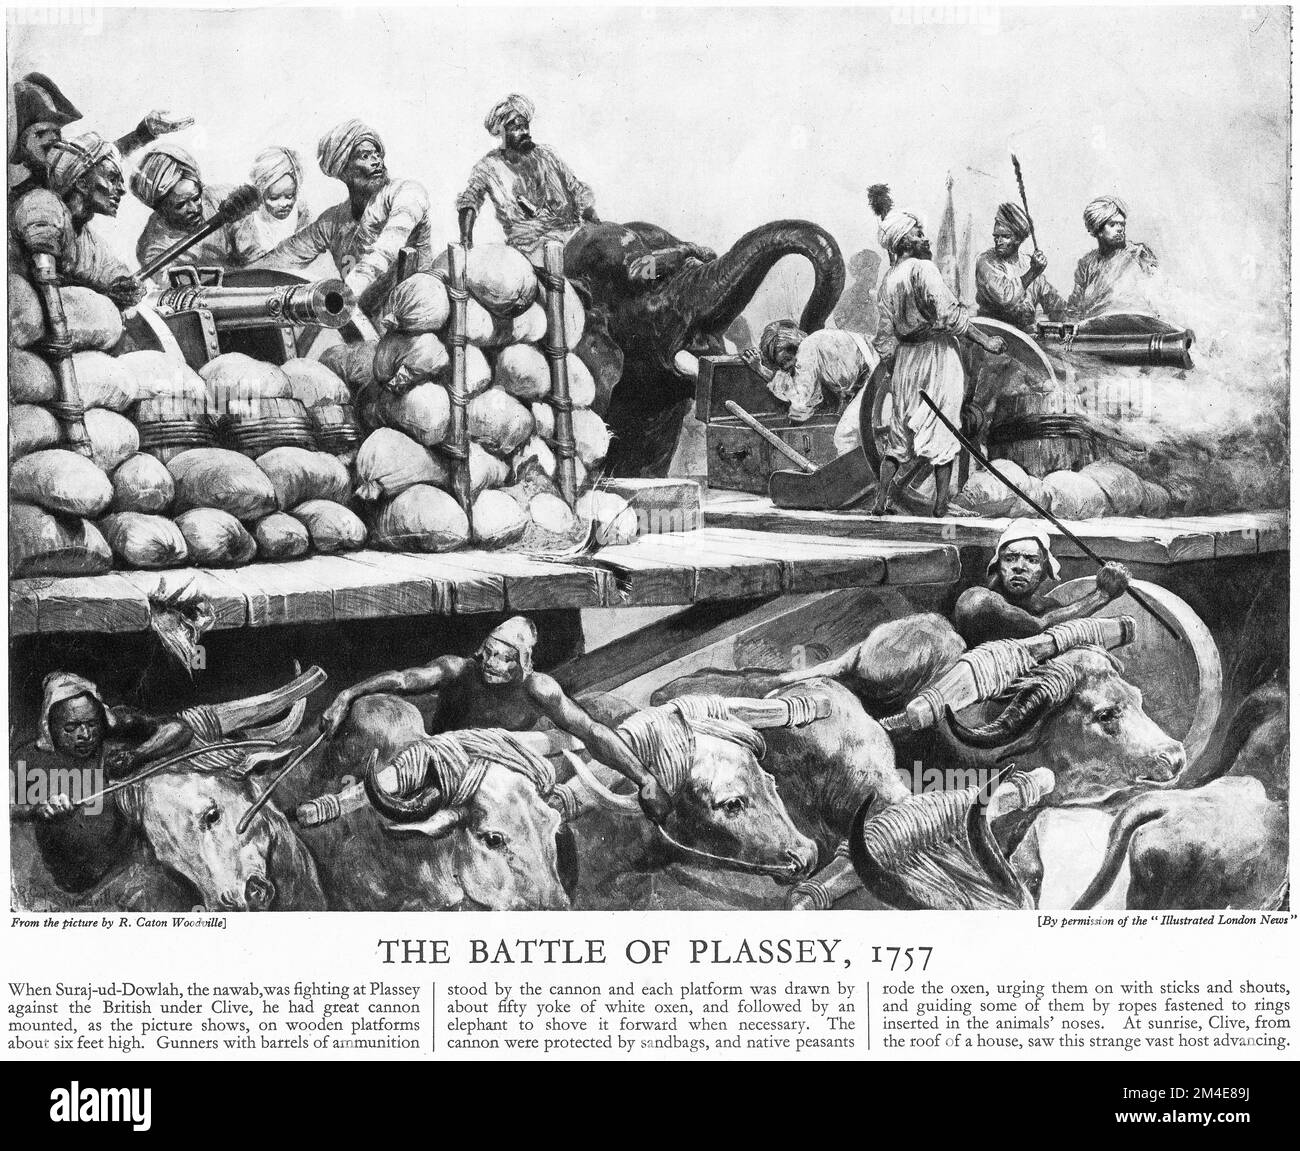 Halbton von Indianern, die ihre Kanonen für die Schlacht von Plassey am 23. Juni 1757 vorbereiten, aus einer Lehrzeitschrift, 1927. Die Schlacht endete als entscheidender Sieg der British East India Company unter der Führung von Robert Clive. Über den Nawab von Bengal und seine französischen Verbündeten. Stockfoto